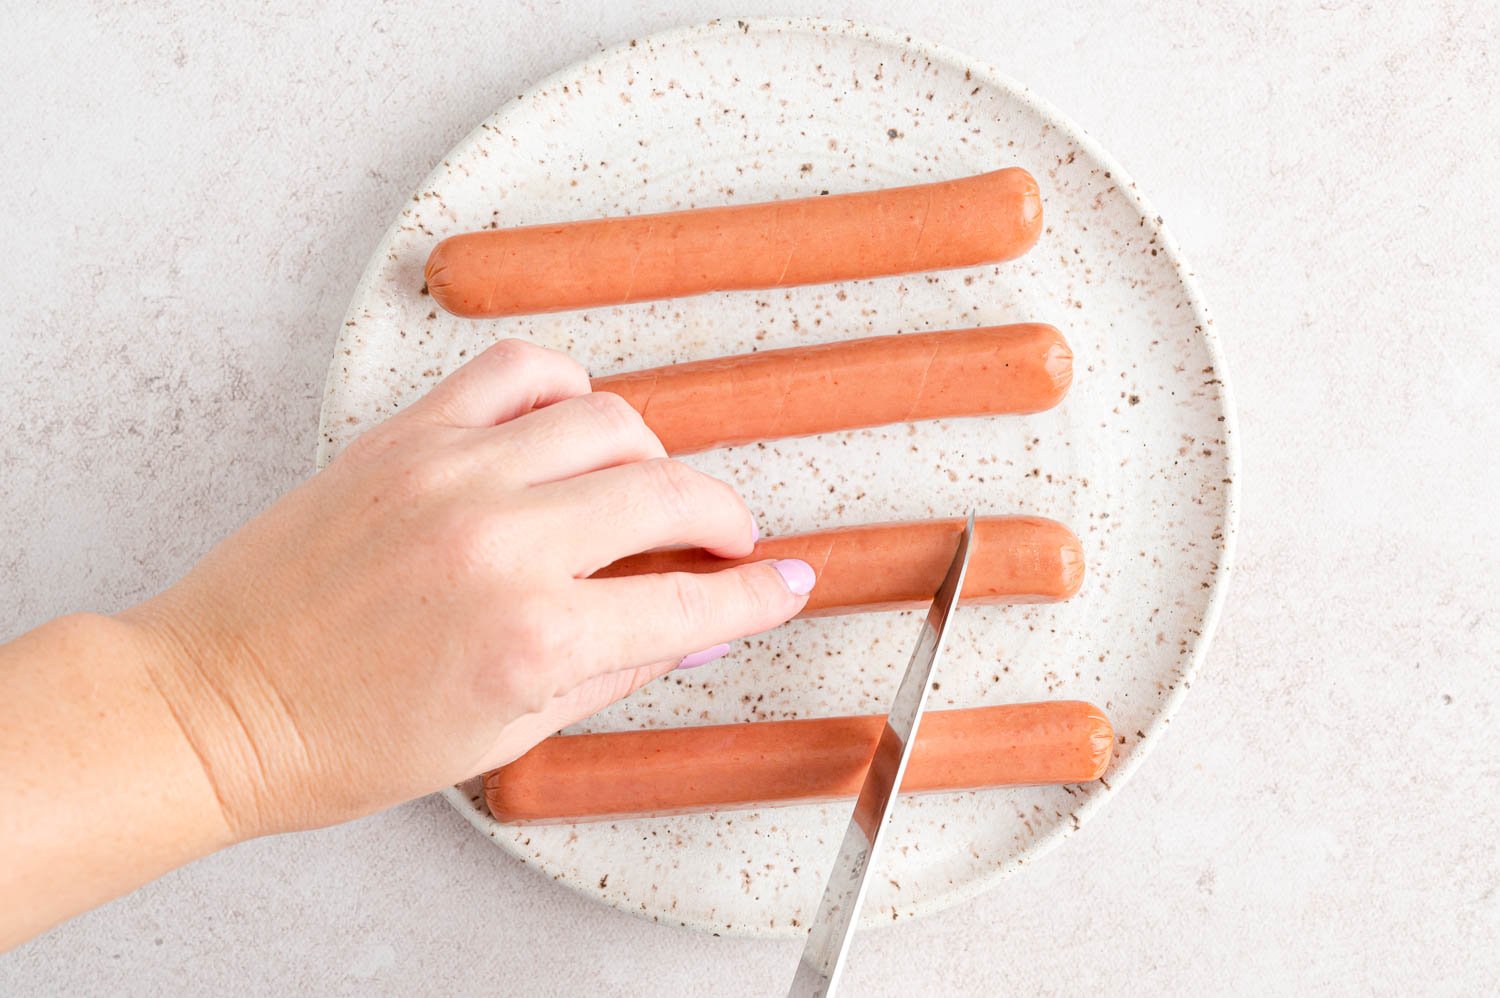 Tranches coupées dans un hot-dog.